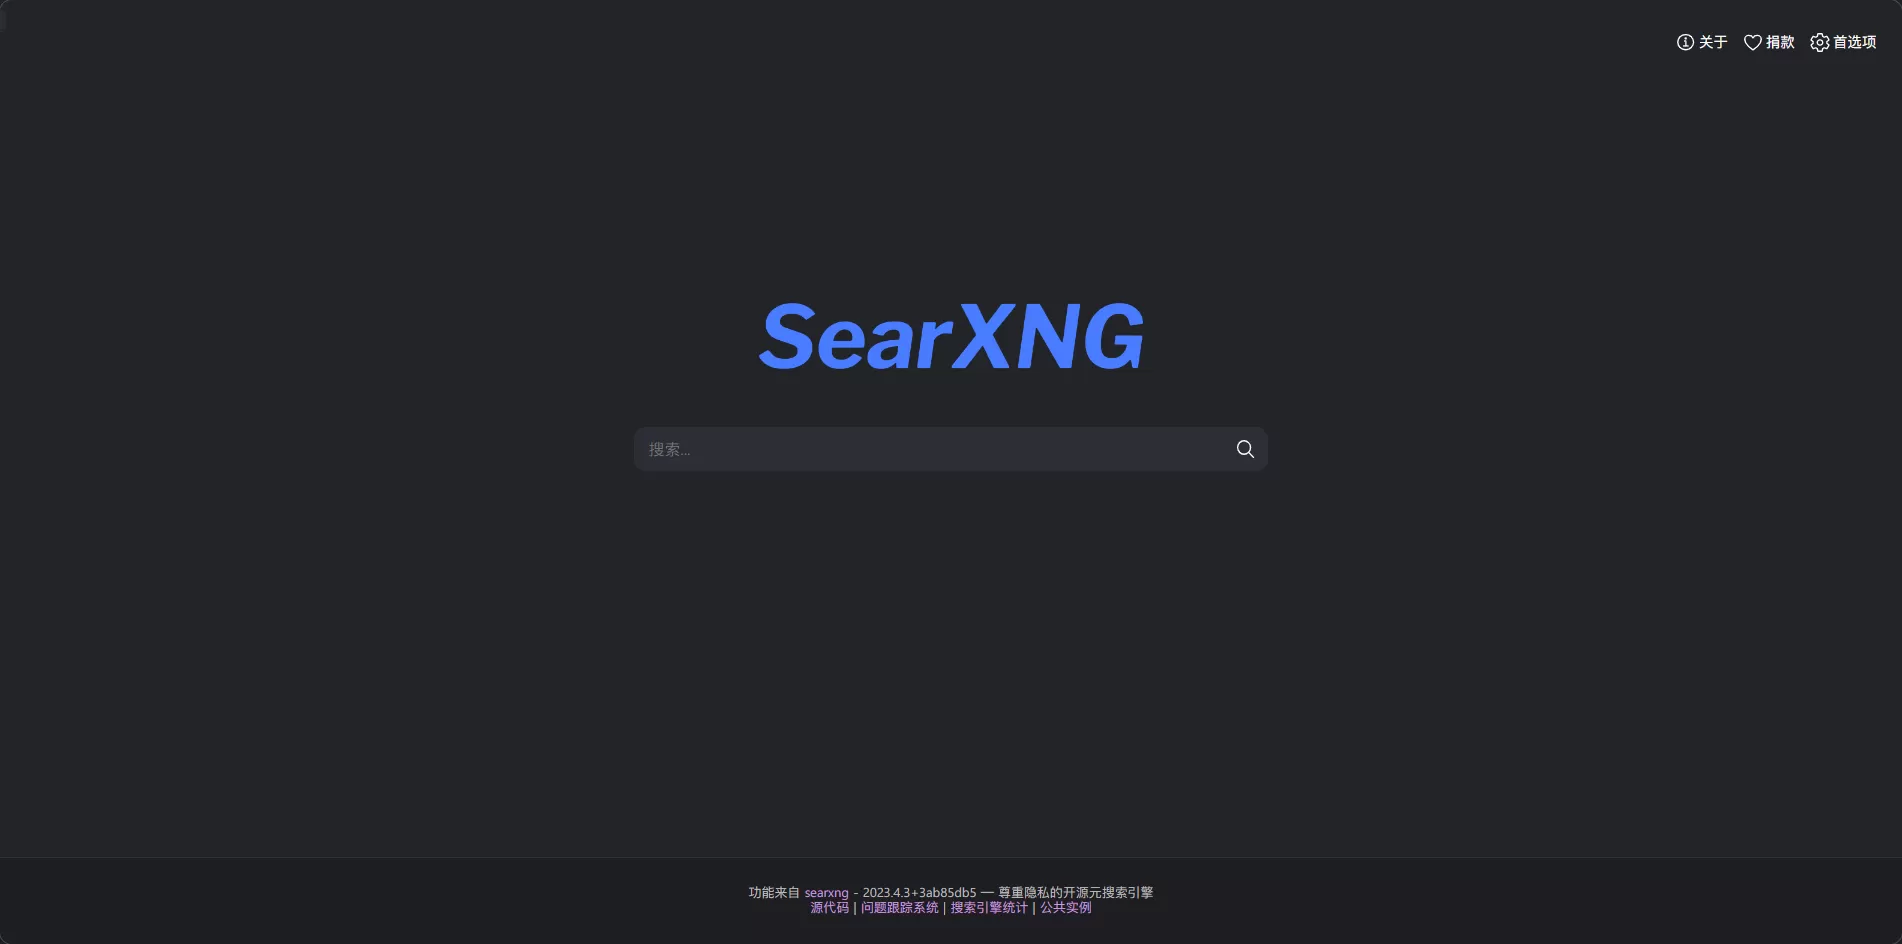 使用SearXNG搭建私人且注重隐私的搜索引擎平台